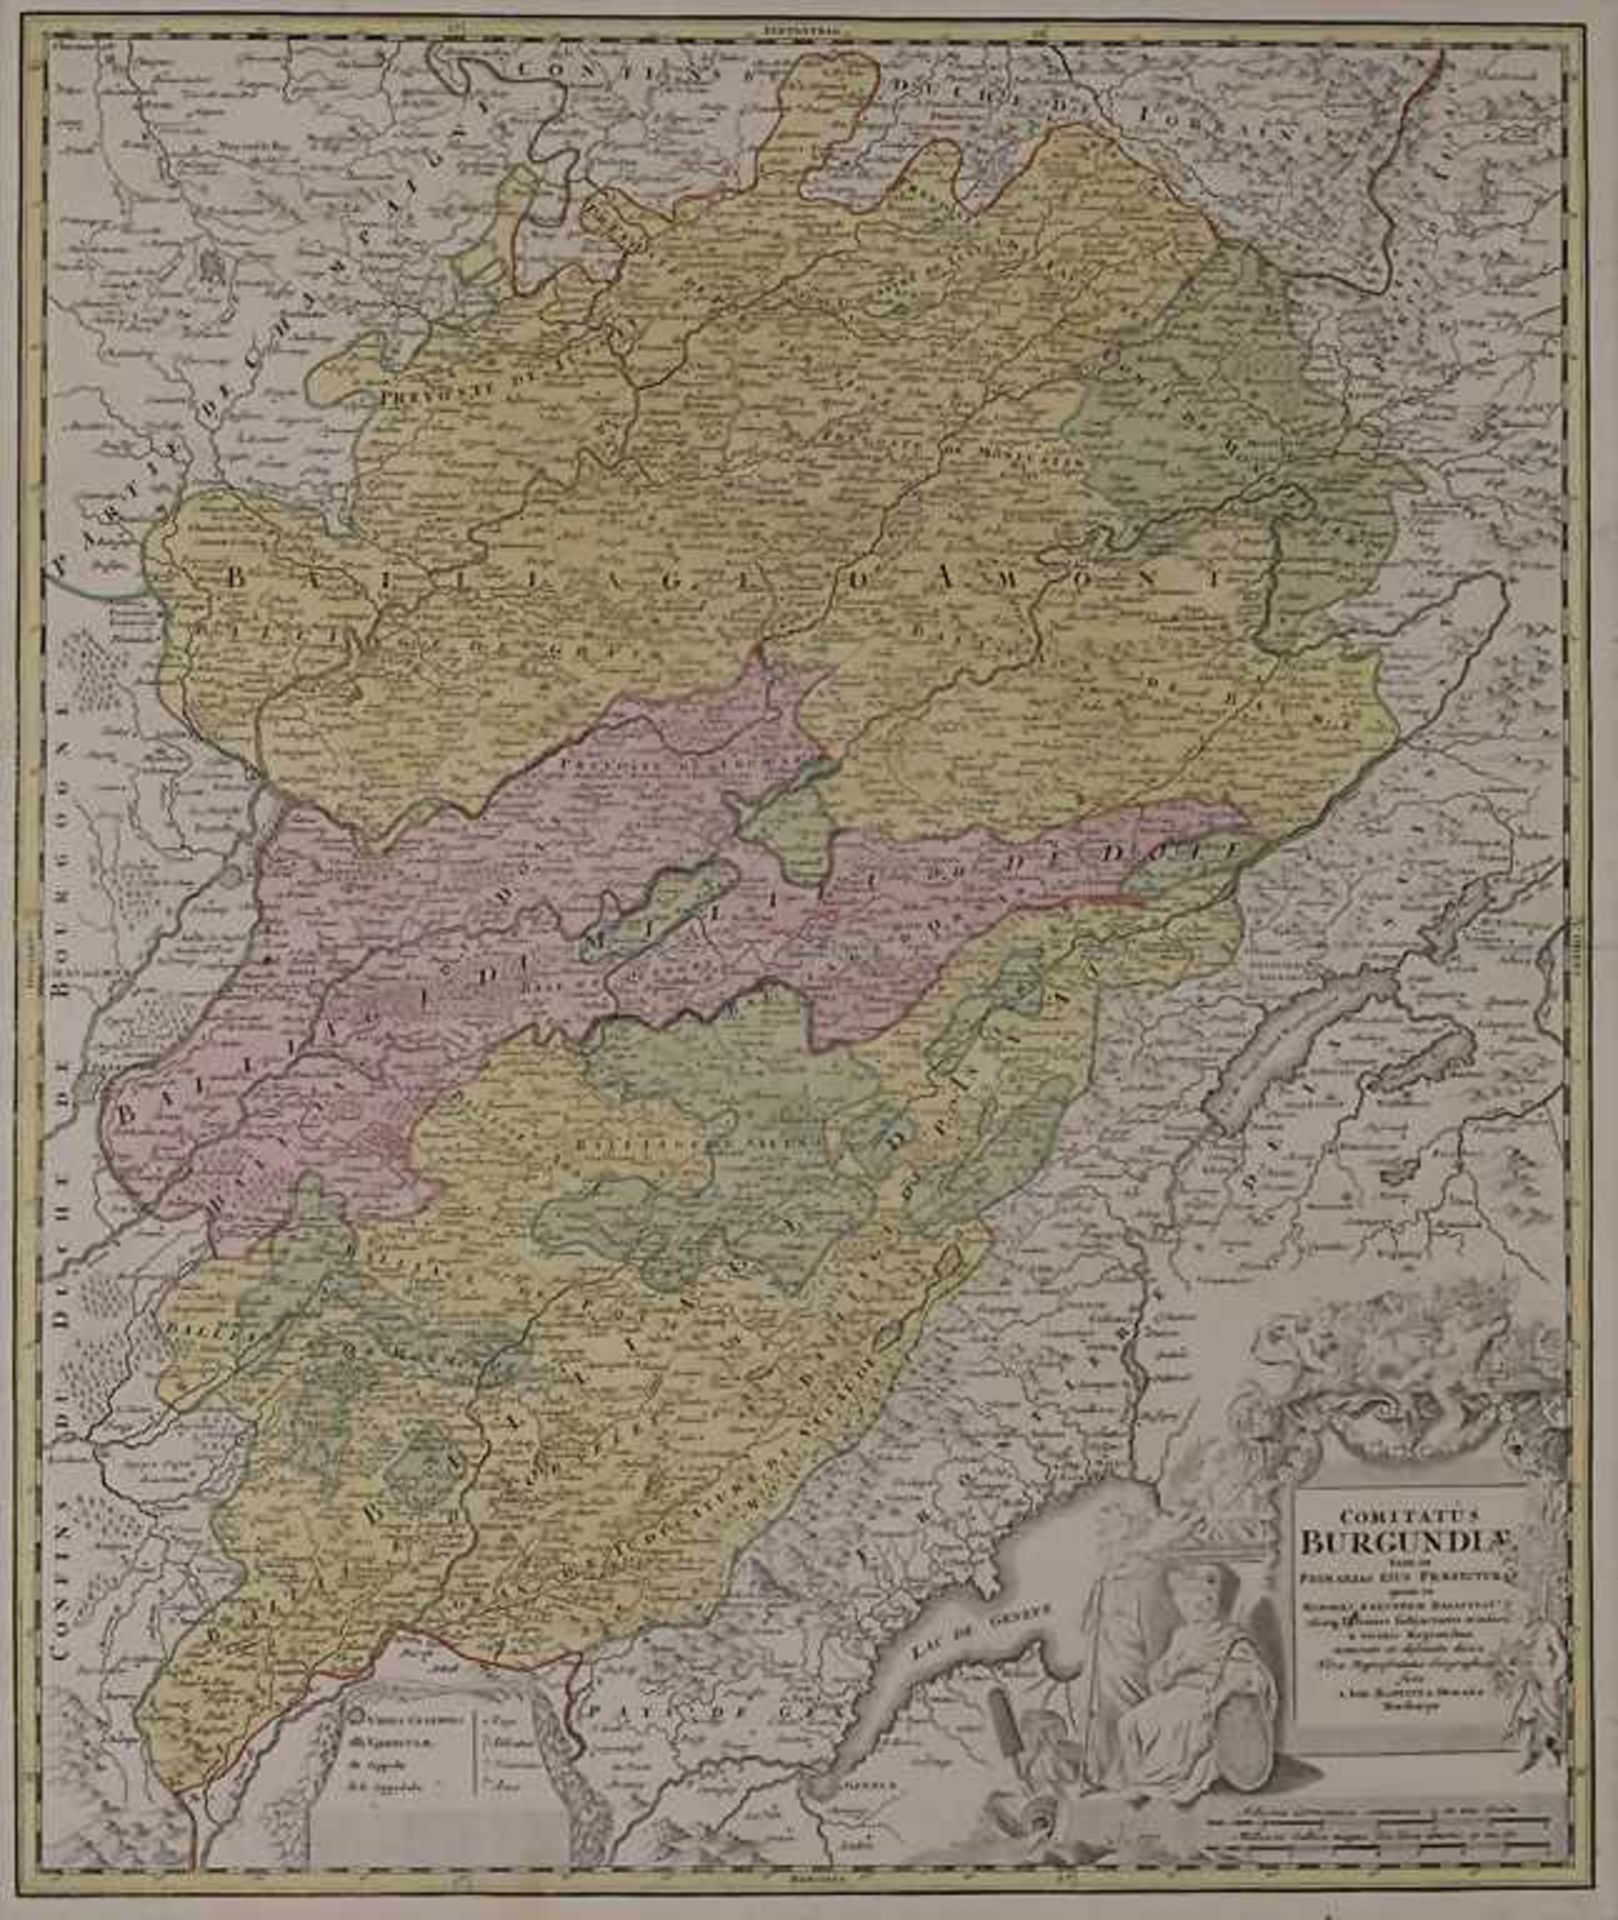 J.B. Homann (1664-1724), Historische Karte des Burgund / A historic map of BurgundiTitel: